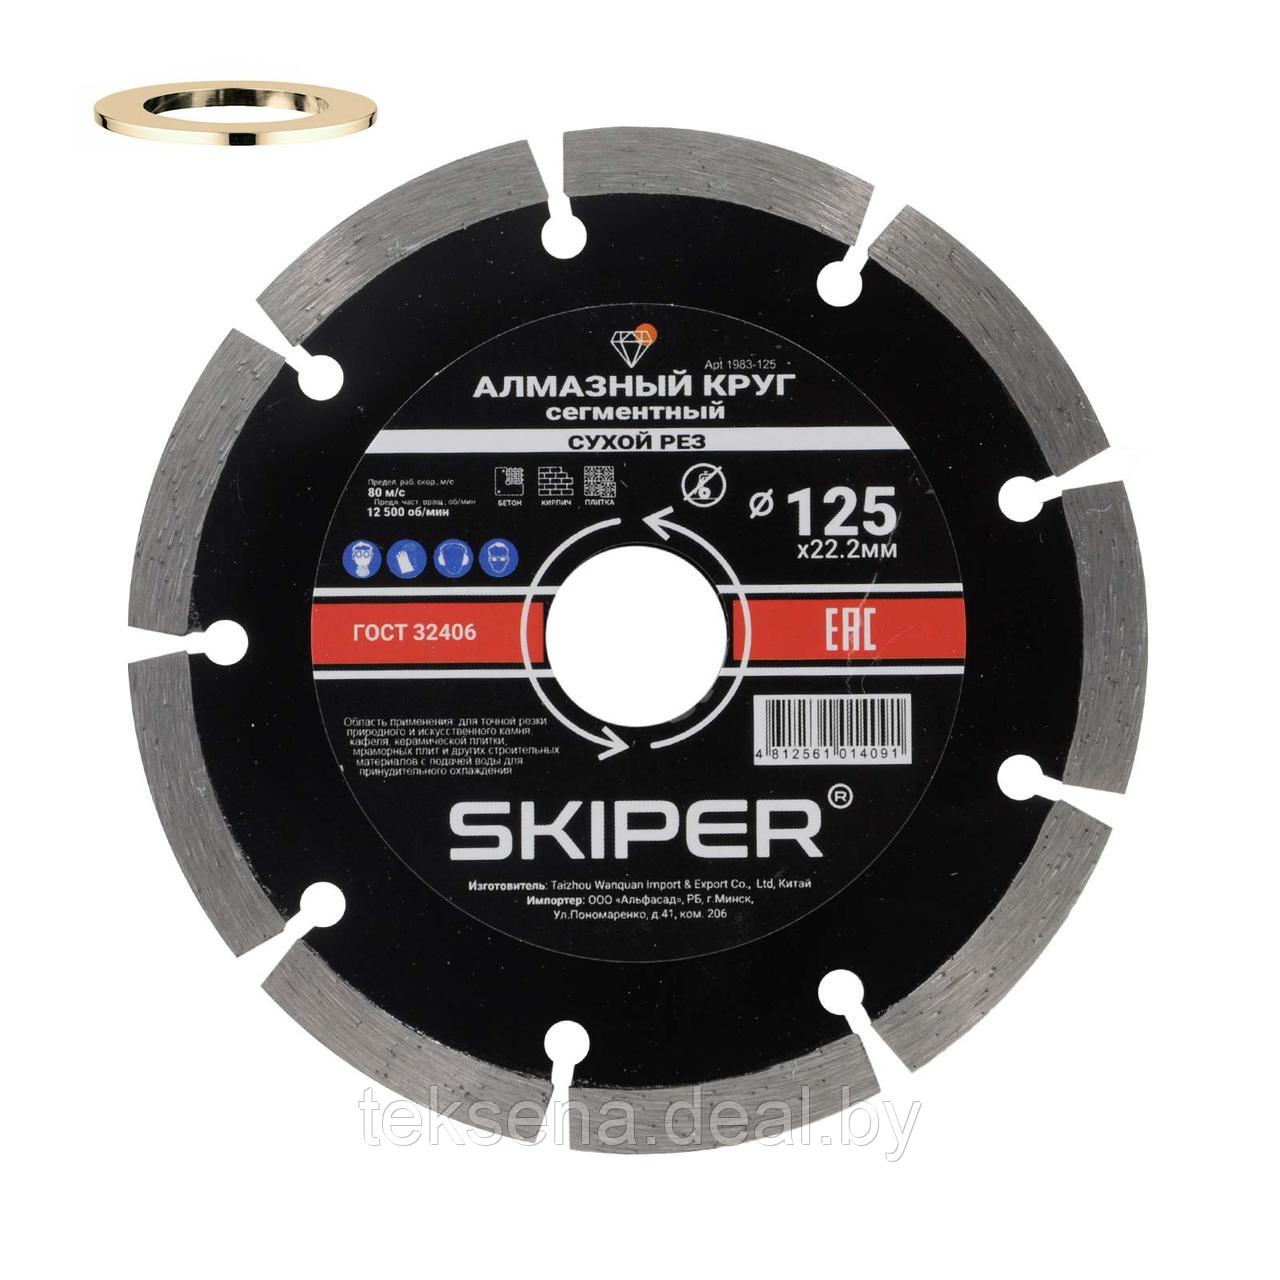 Алмазный круг 125х22 мм универс. сегмент. SKIPER (сухая резка) (1983-125)